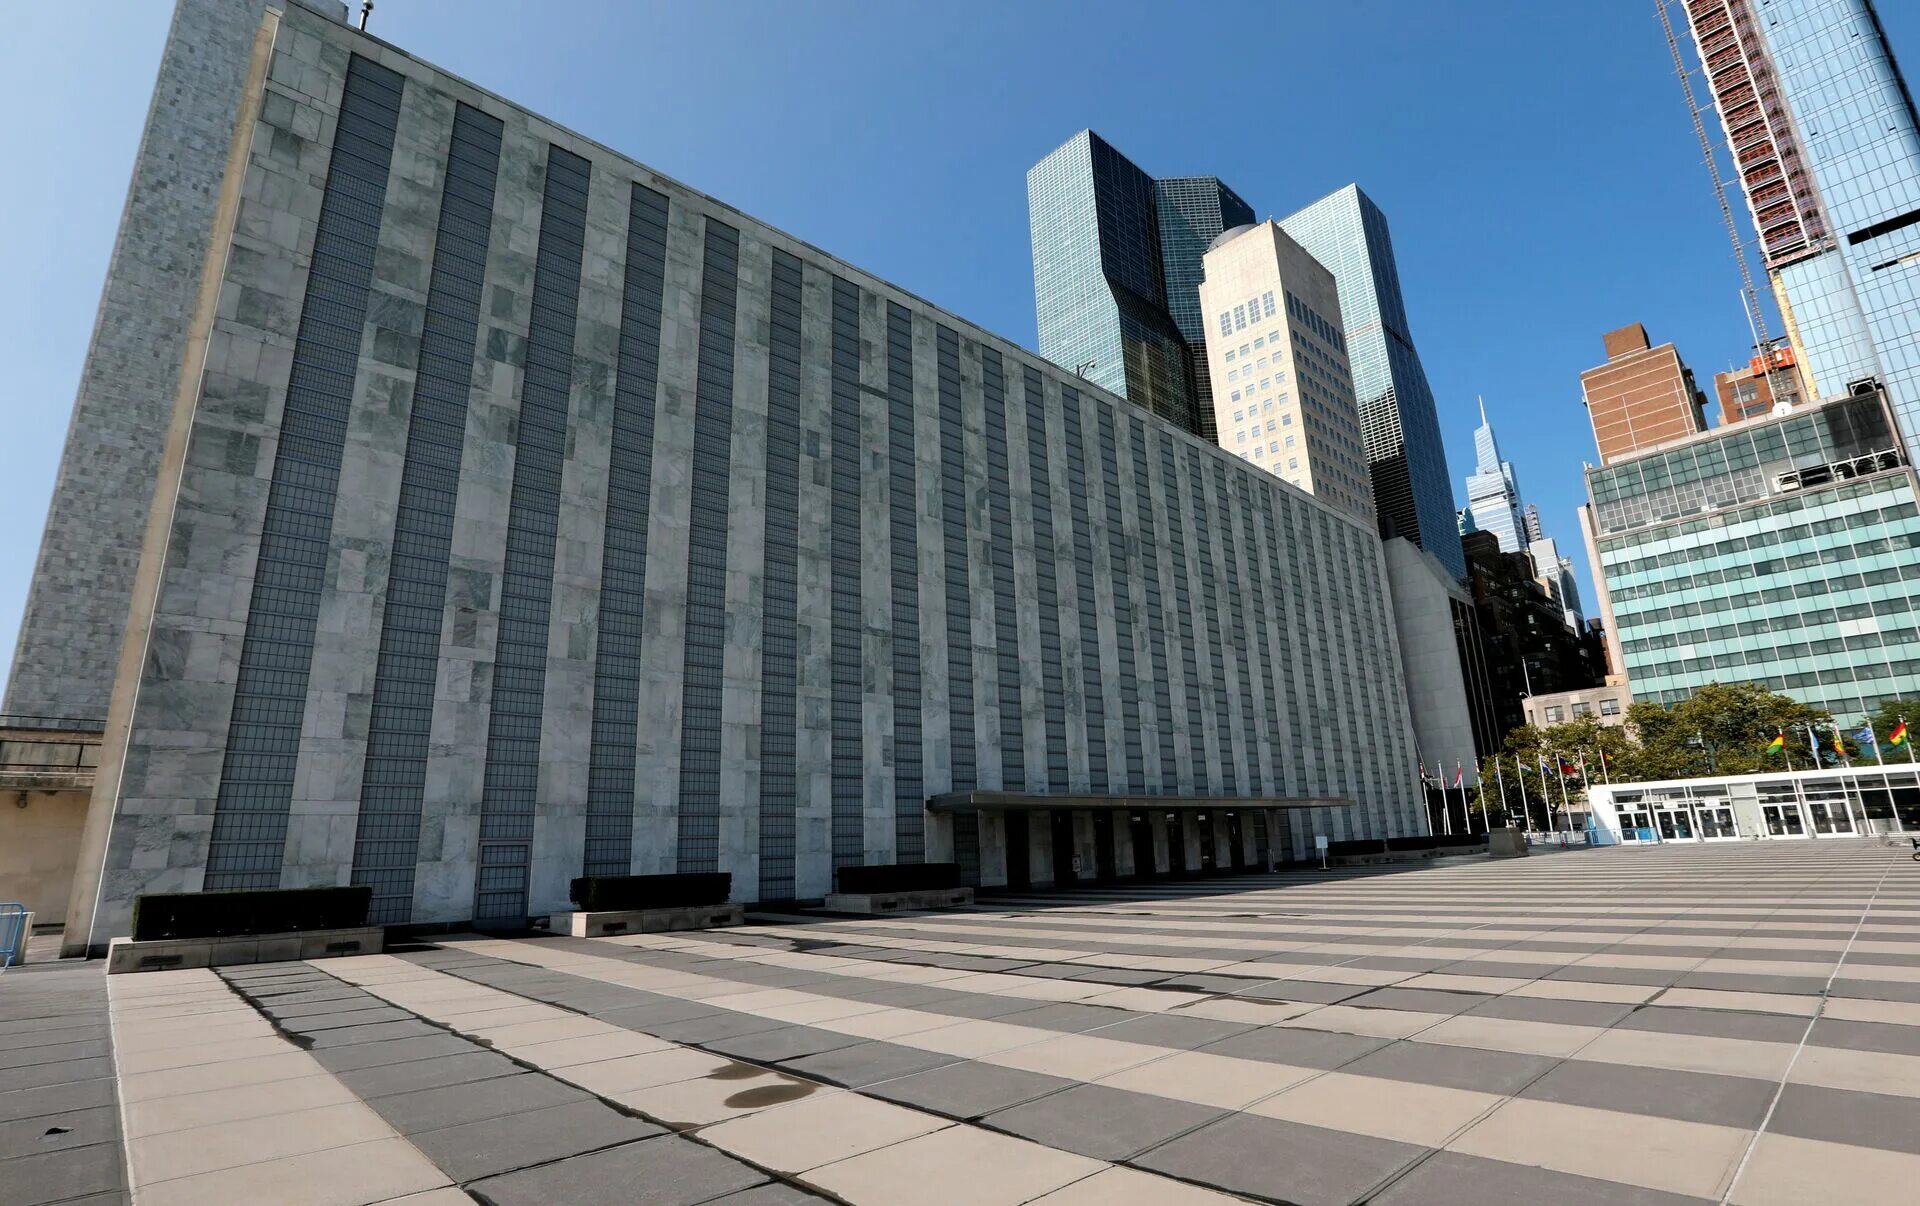 Дом оон. Здание ООН В Нью-Йорке. Здание ООН (организации Объединённых наций) в Нью-Йорке. Здание ООН В США. Здание ООН В Нью-Йорке фото.